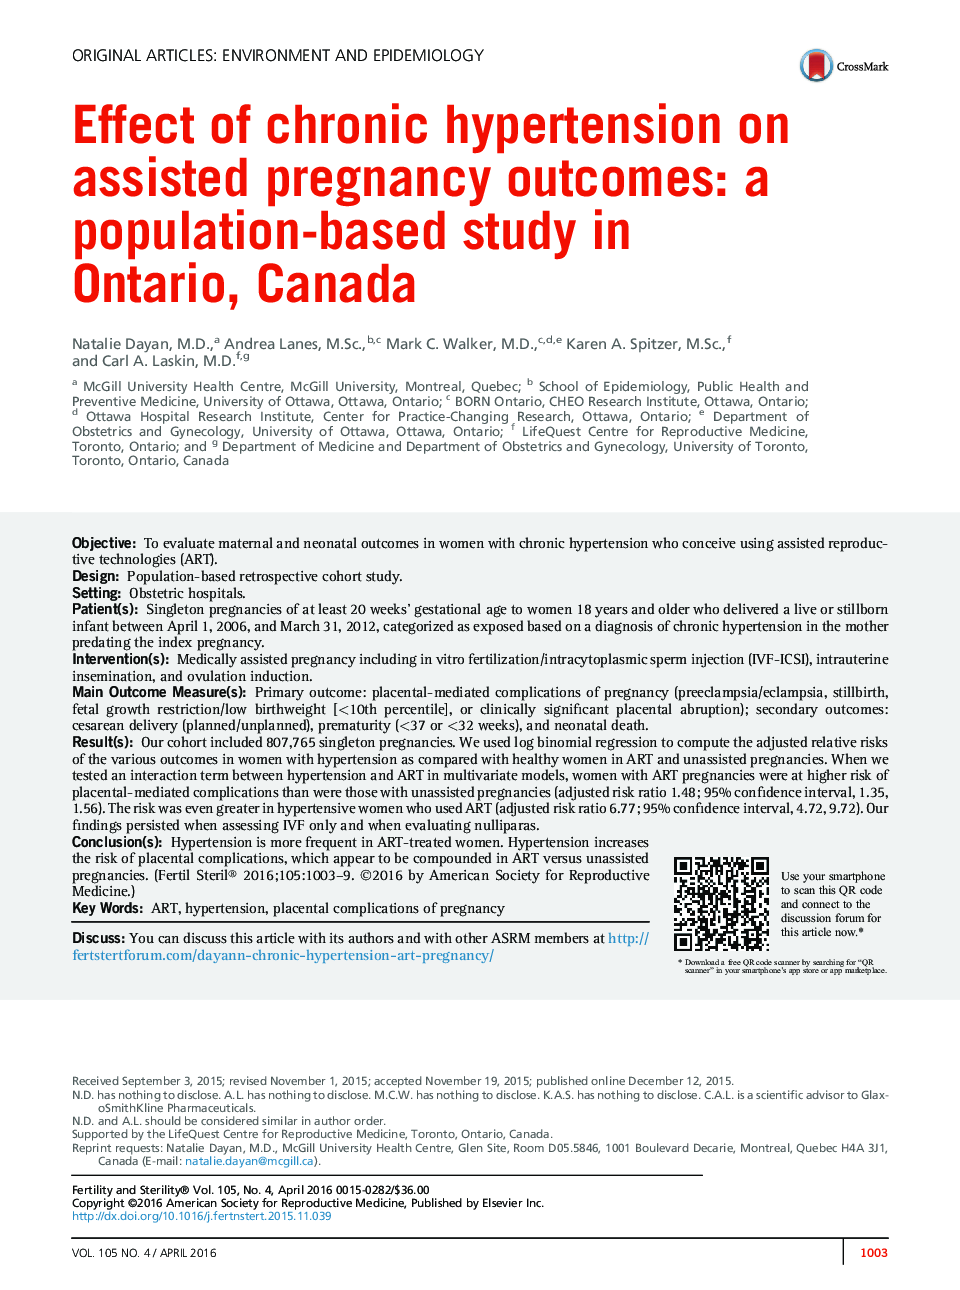 اثر فشار خون مزمن بر نتایج حاملگی کمکی: مطالعه مبتنی بر جمعیت در انتاریو، کانادا